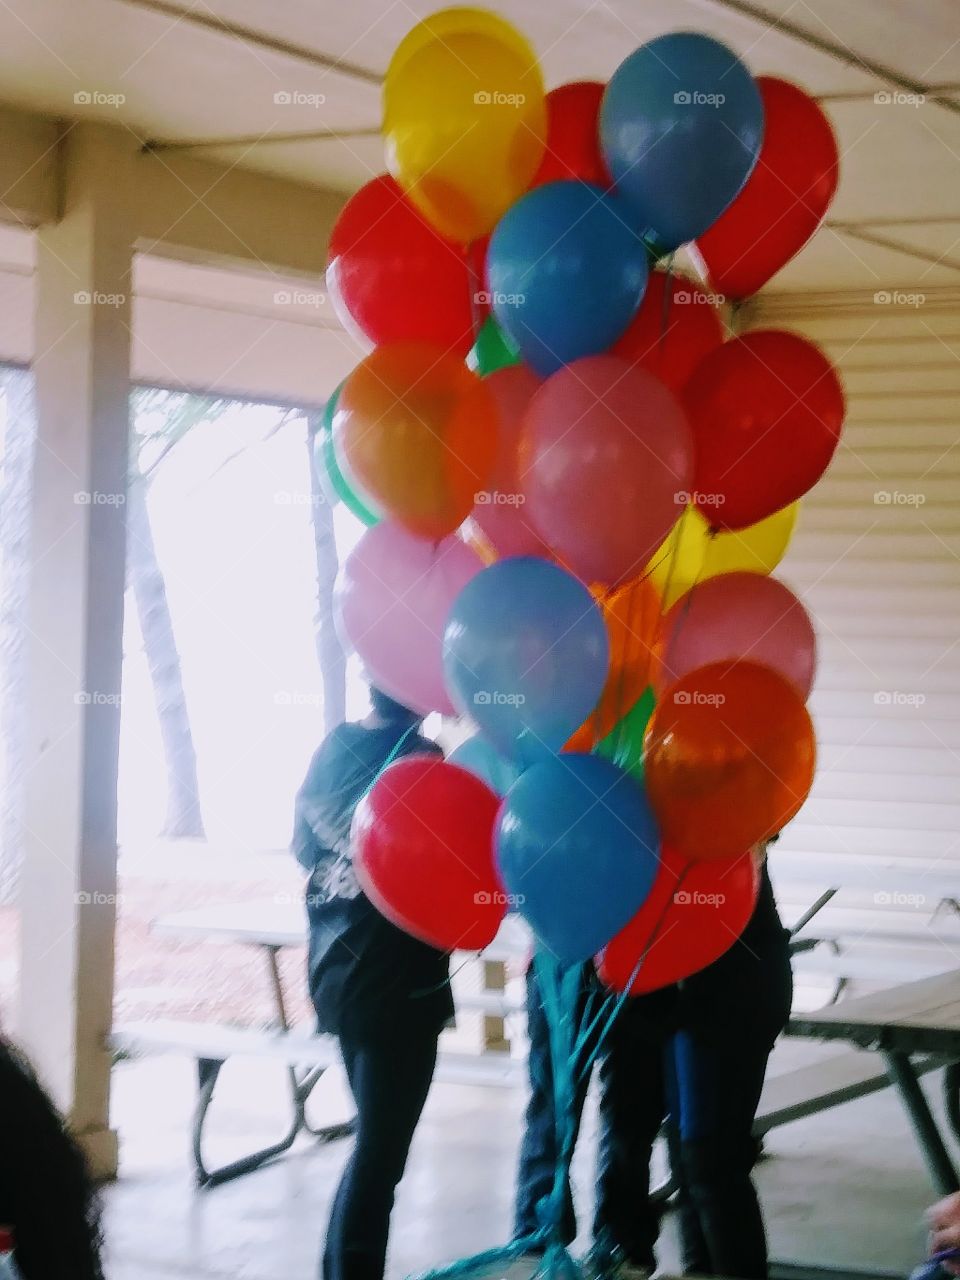 balloonsballoons